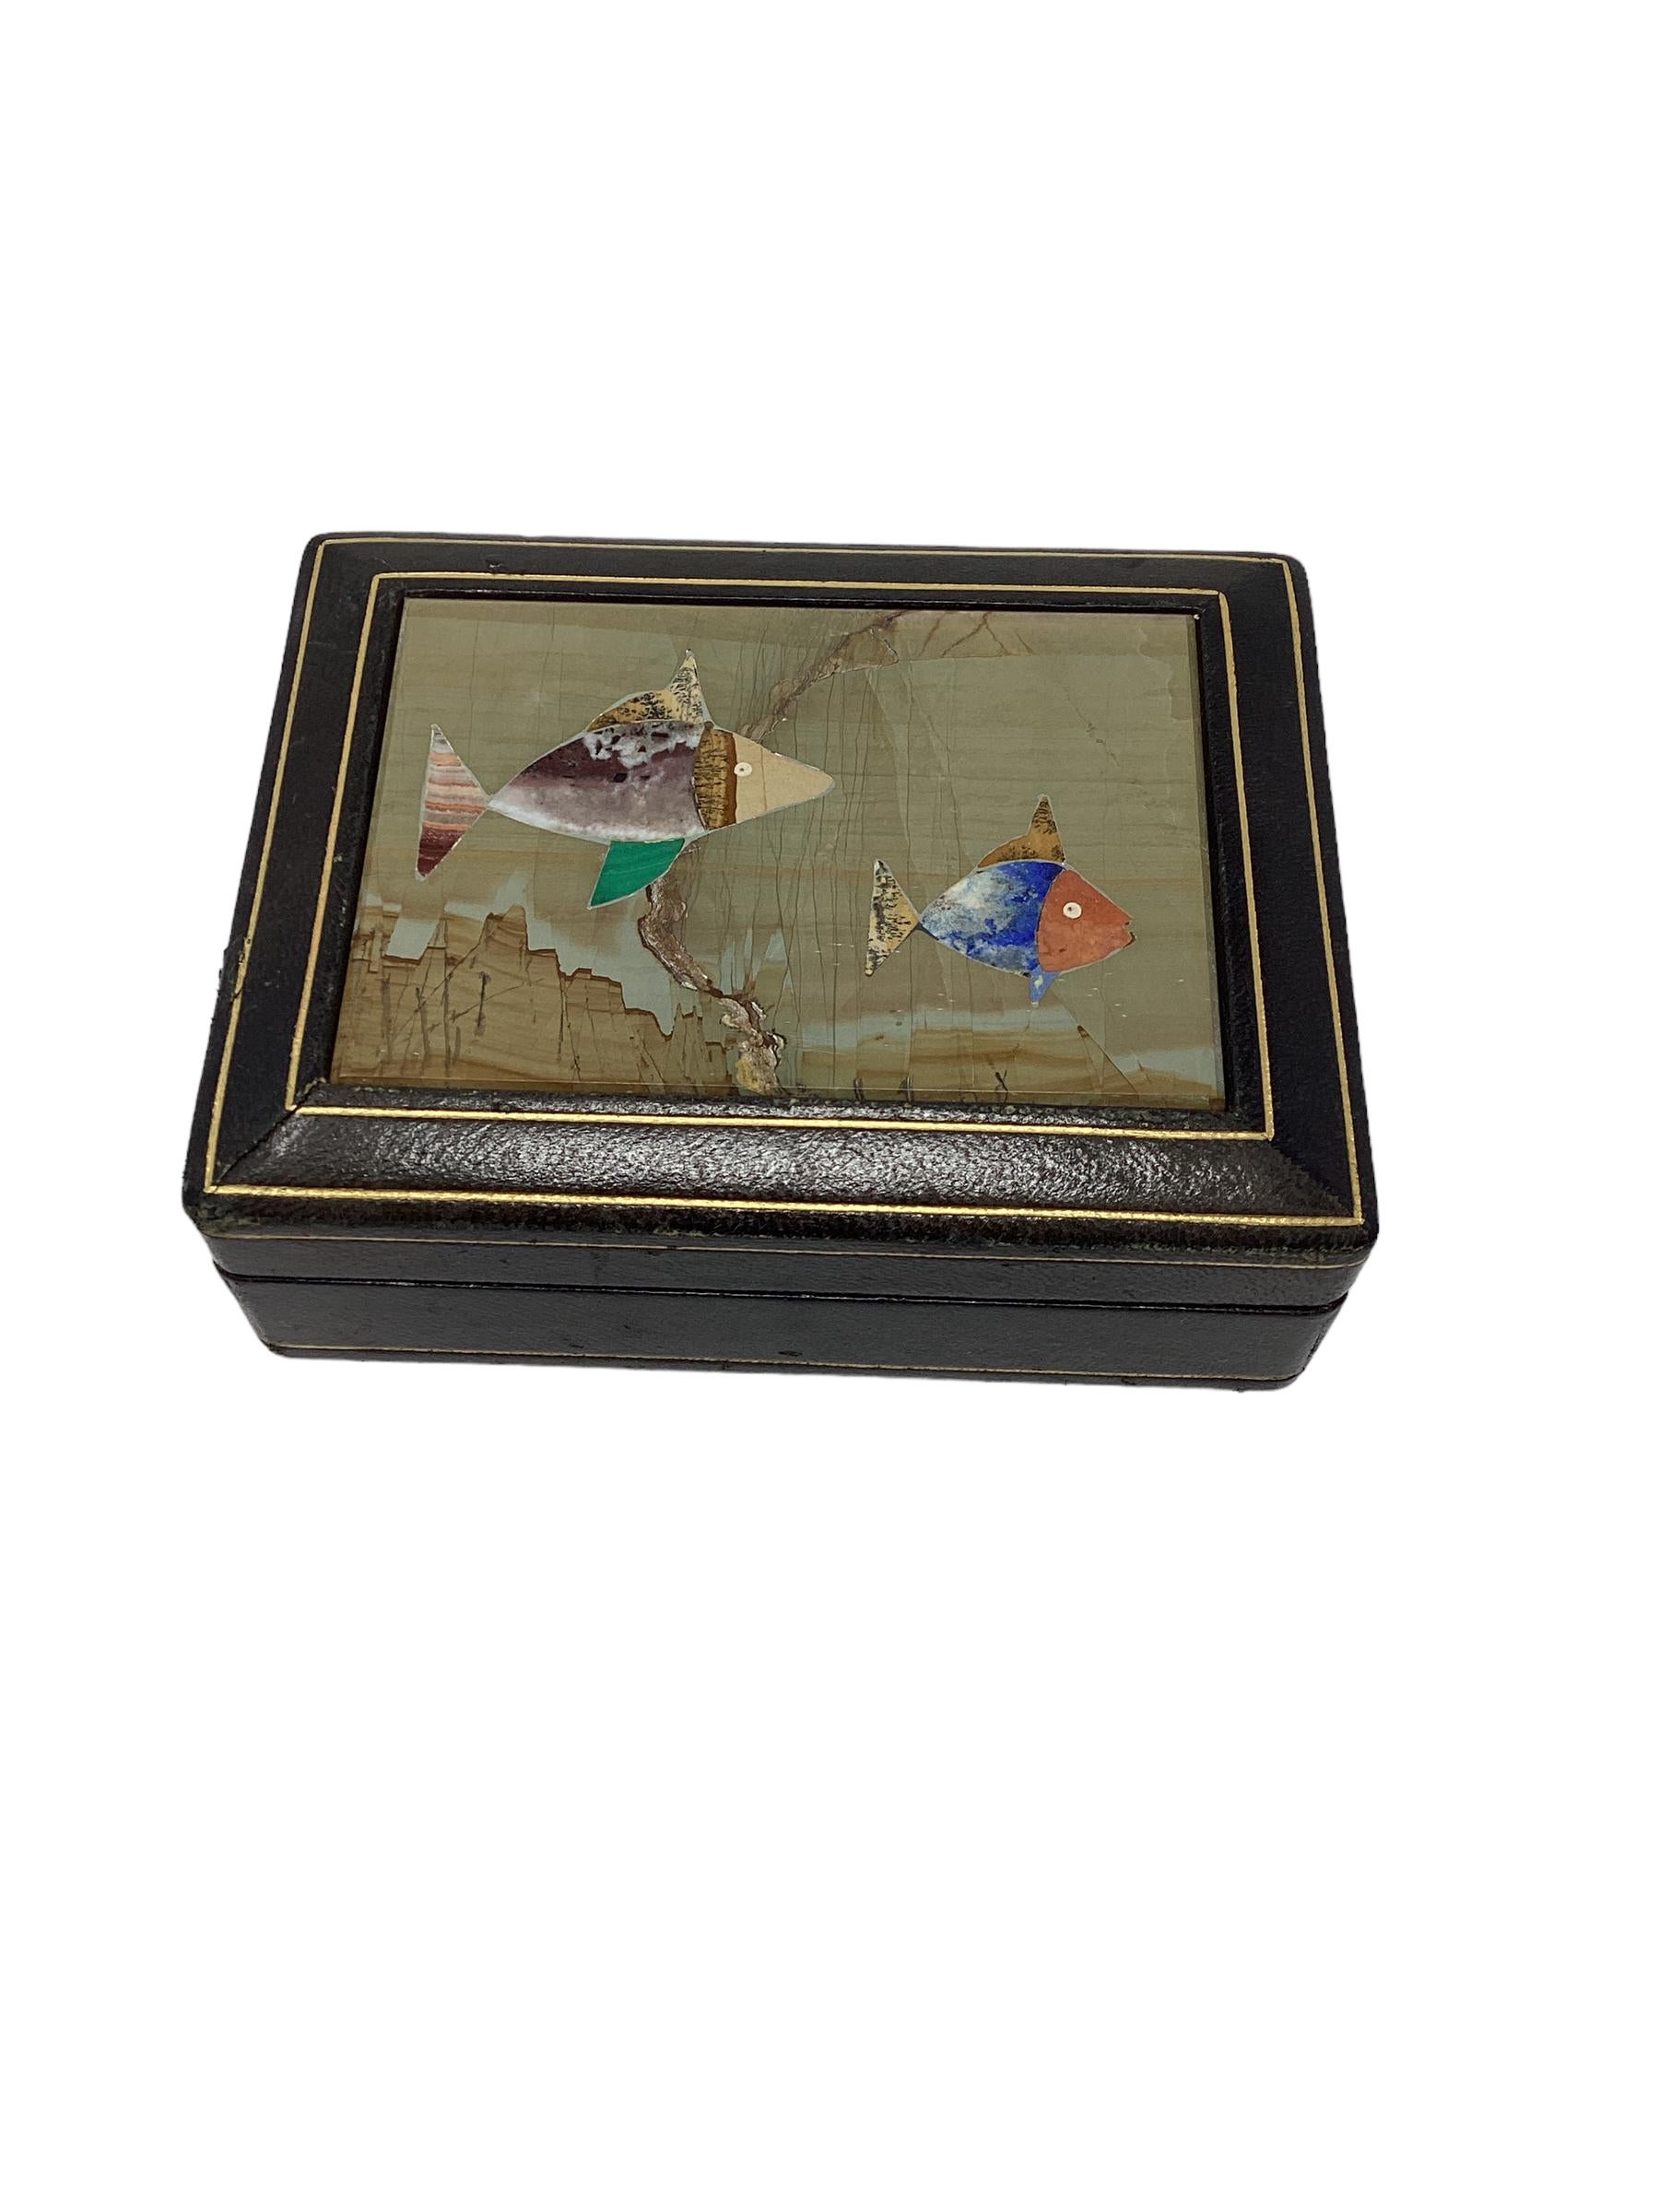 Boîte vintage en cuir italien avec carreaux en pietra dura décorés de poissons aux couleurs vives. L'intérieur est revêtu de bois. On y trouvait des bibelots ou des cigarettes. Estampillé sur le fond 